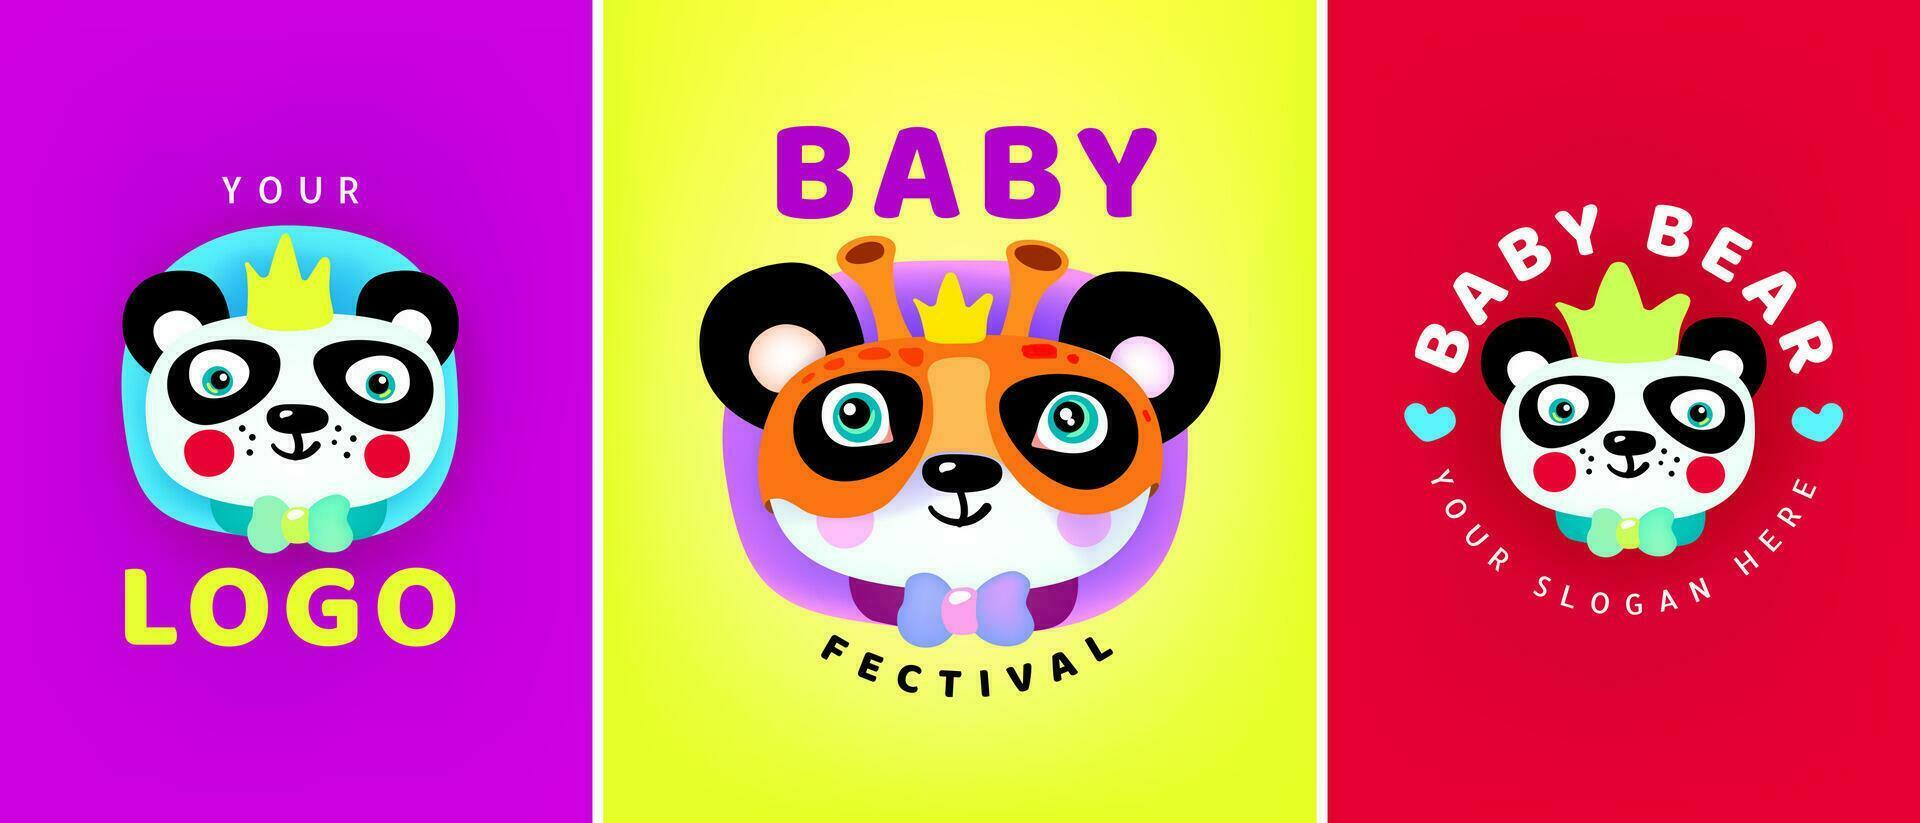 Baby festival . Carnival mask festival. Vector illustration. Logotype